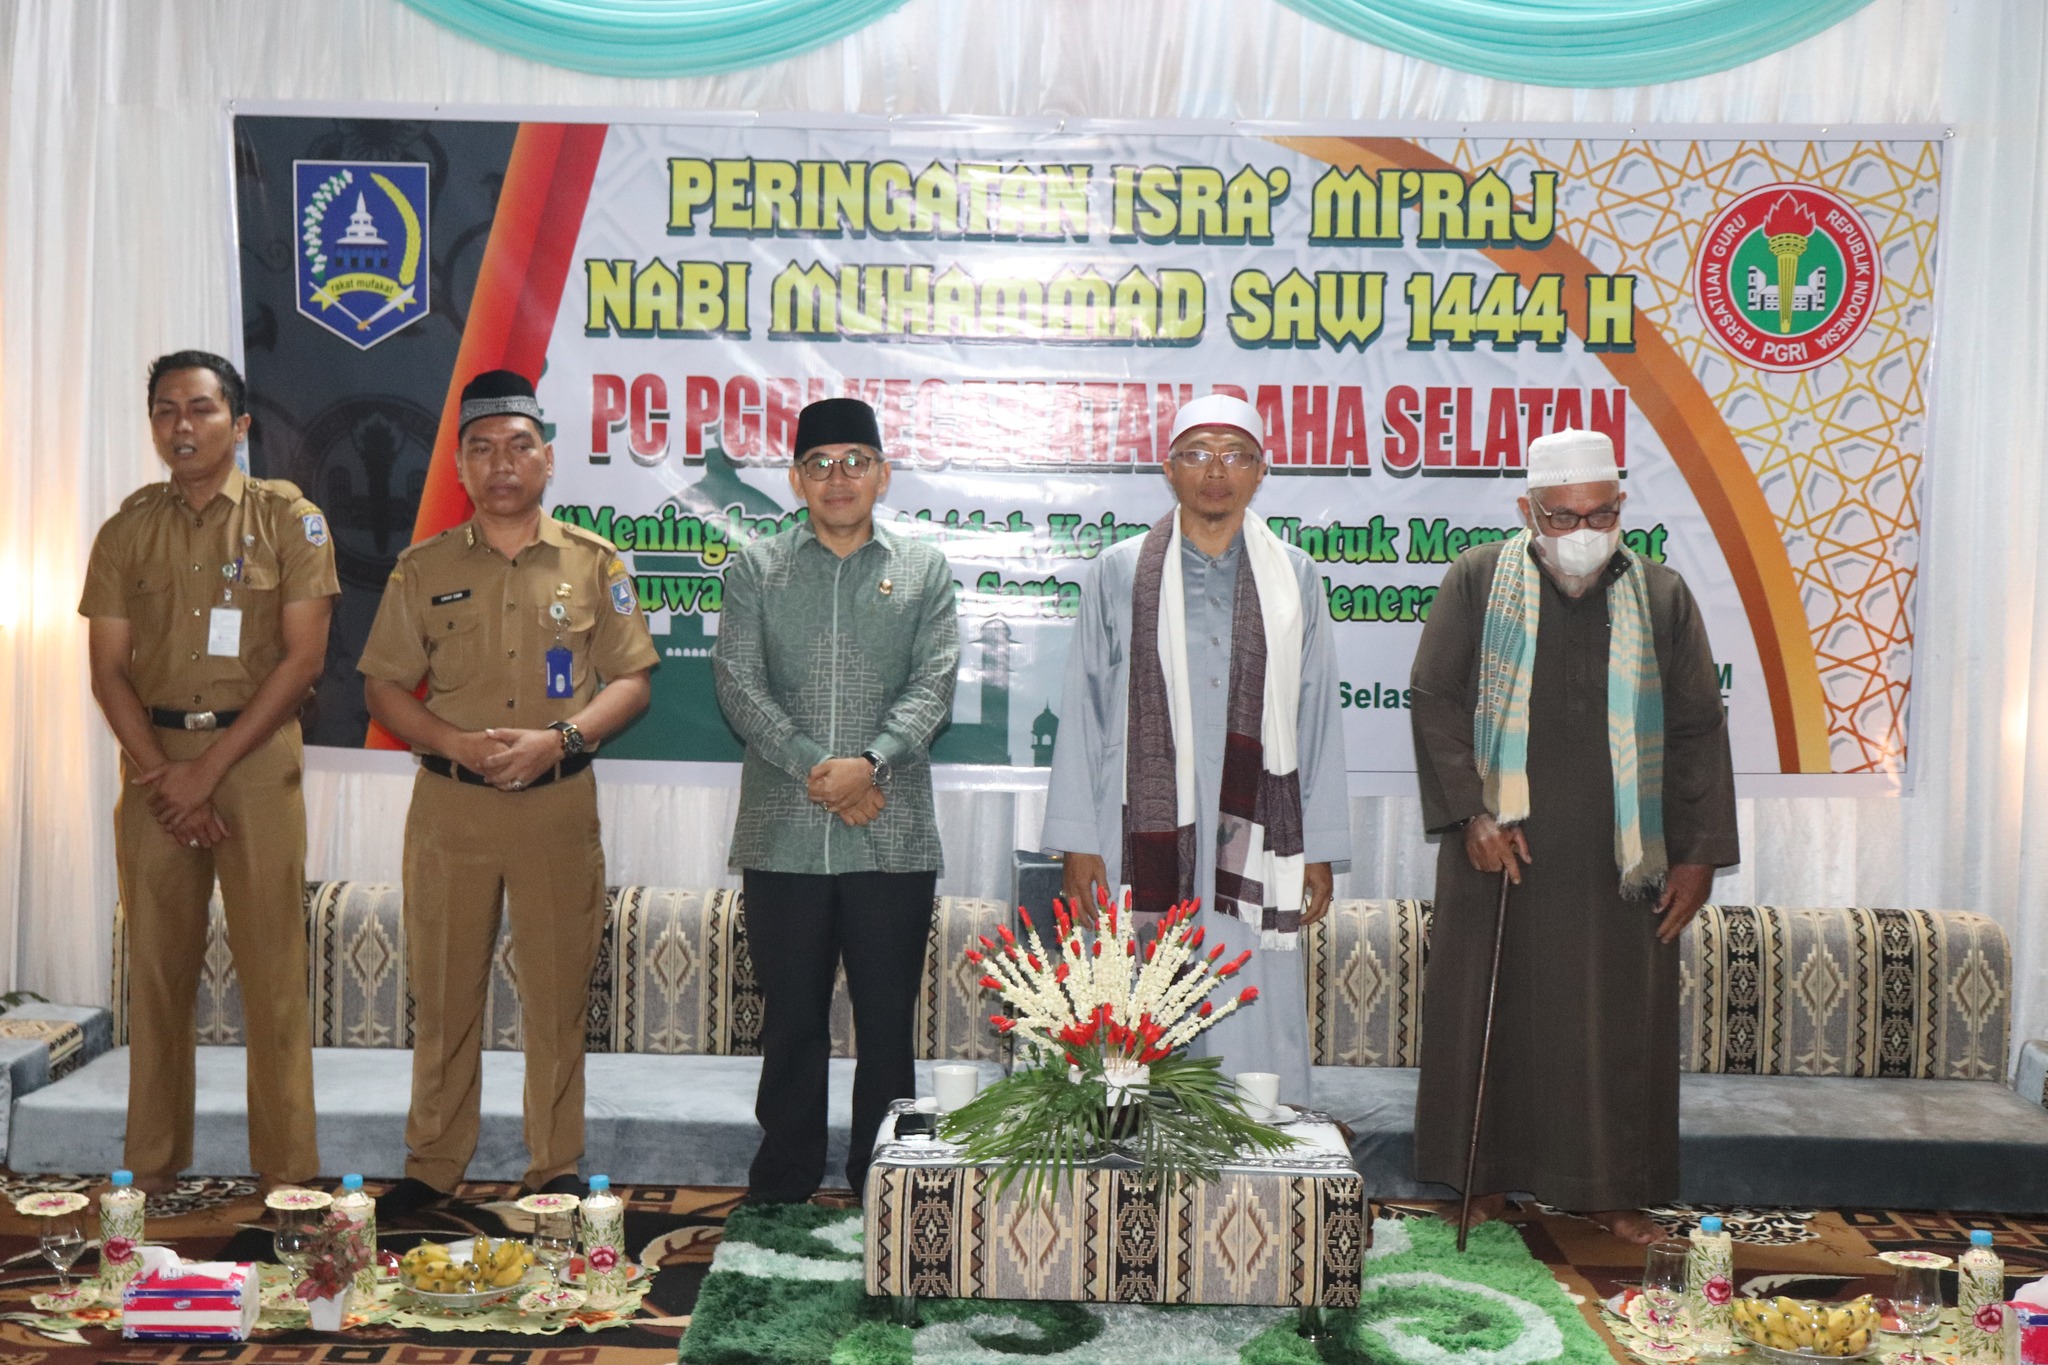 Ratusan Guru Peringati Isra Miraj di GOR Daha Selatan – Koran Banjar